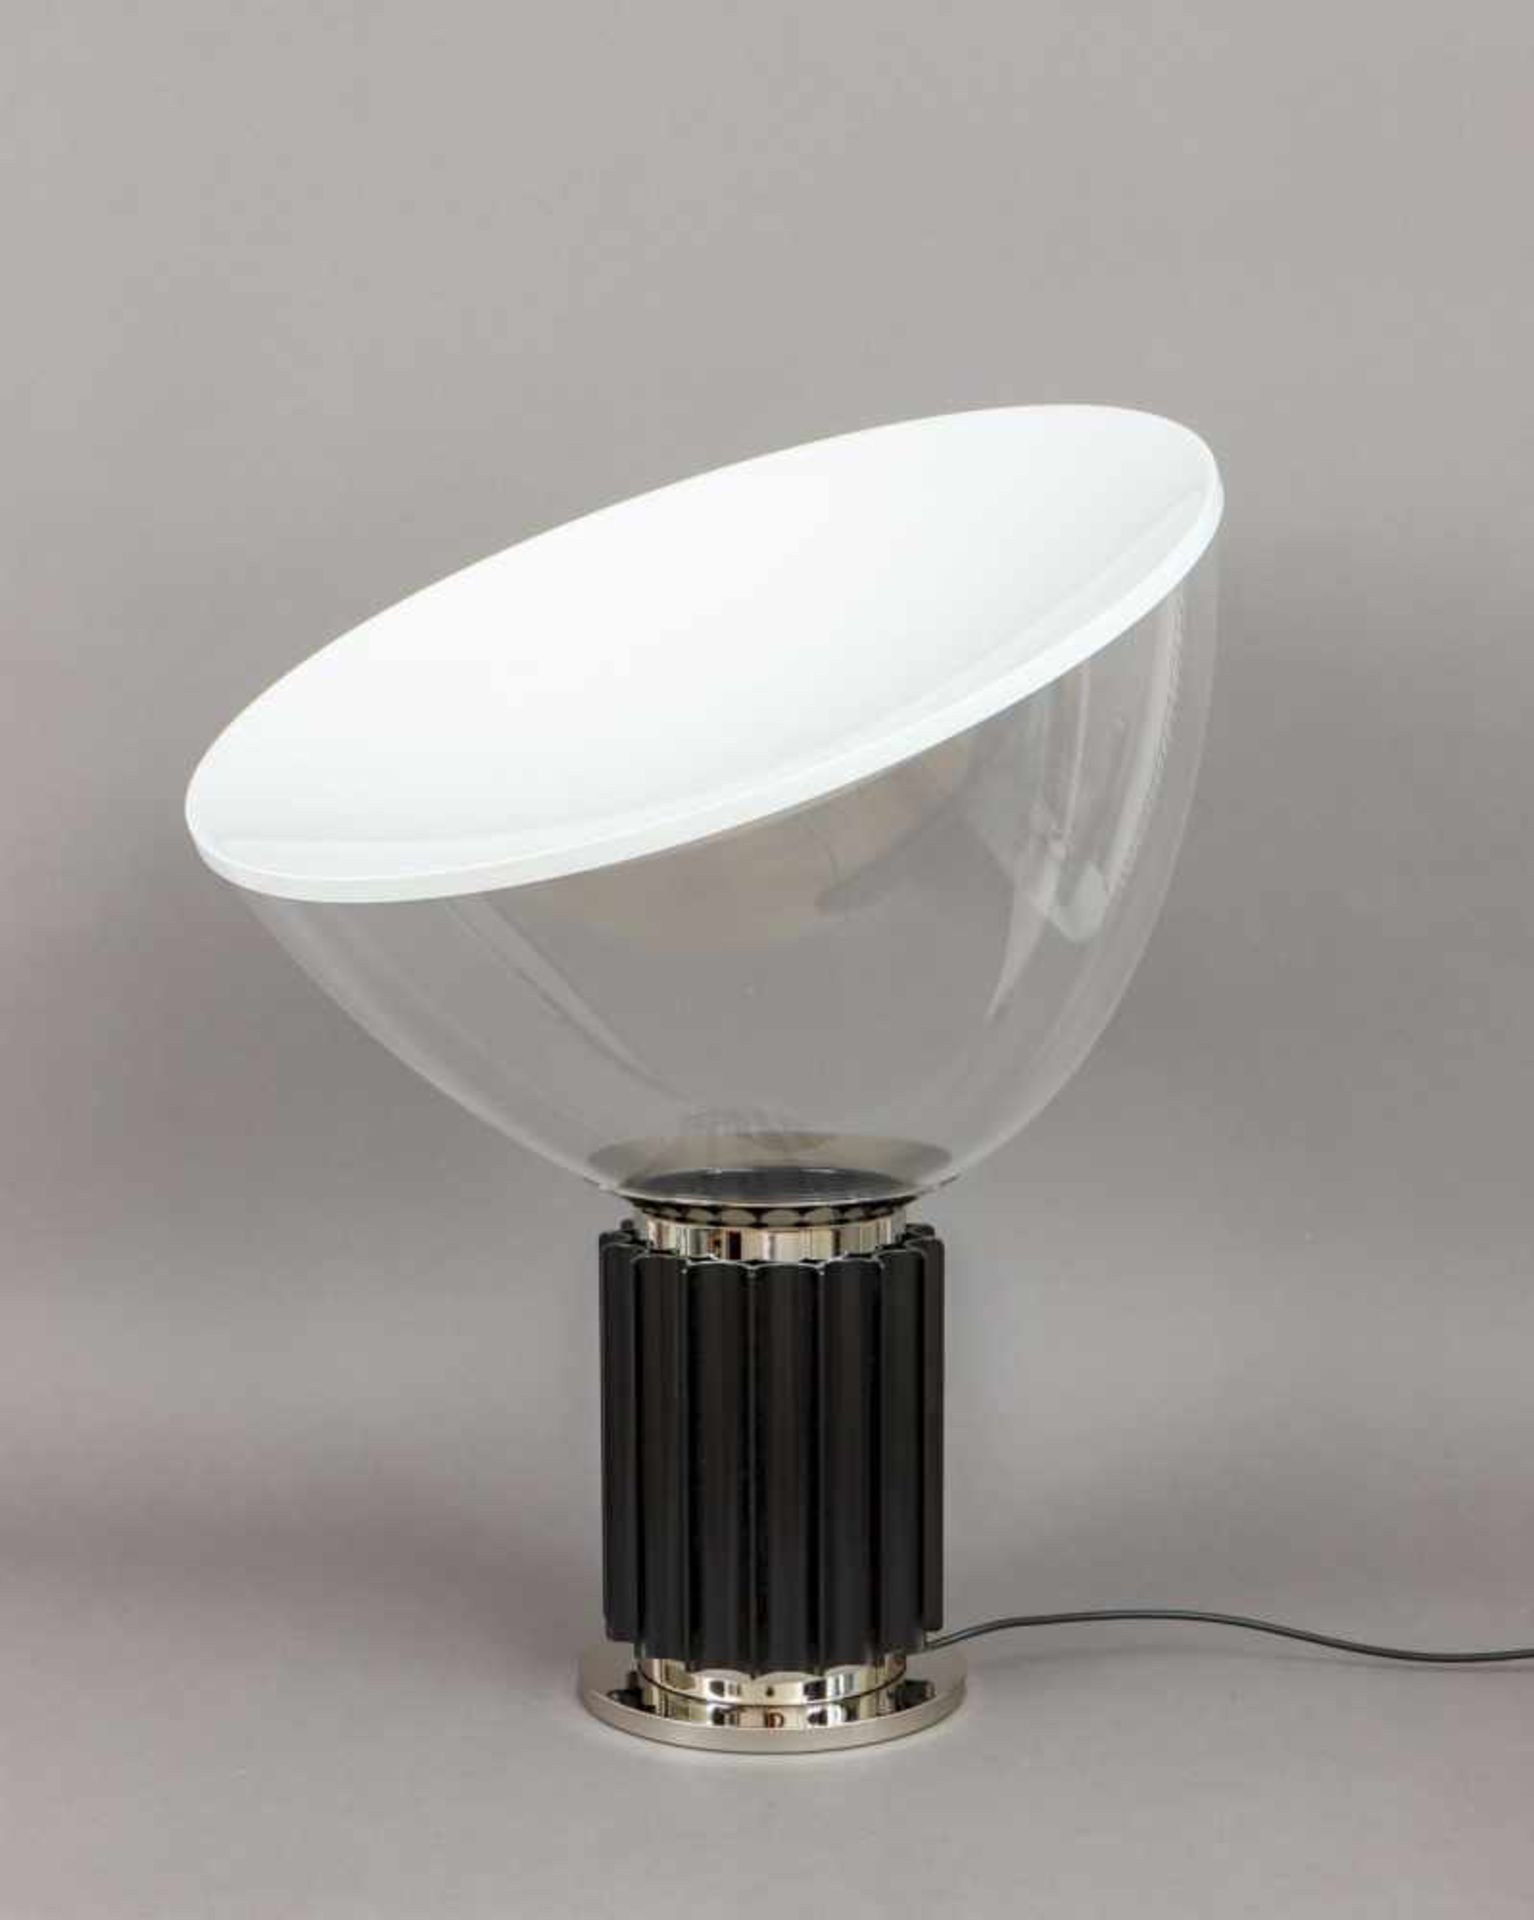 FLOS TACCIA Tischlampe ¨small¨ (Entwurf ACHILLE CASTIGLIONI, 1962)mit LED-Leuchtkörper, schwarz